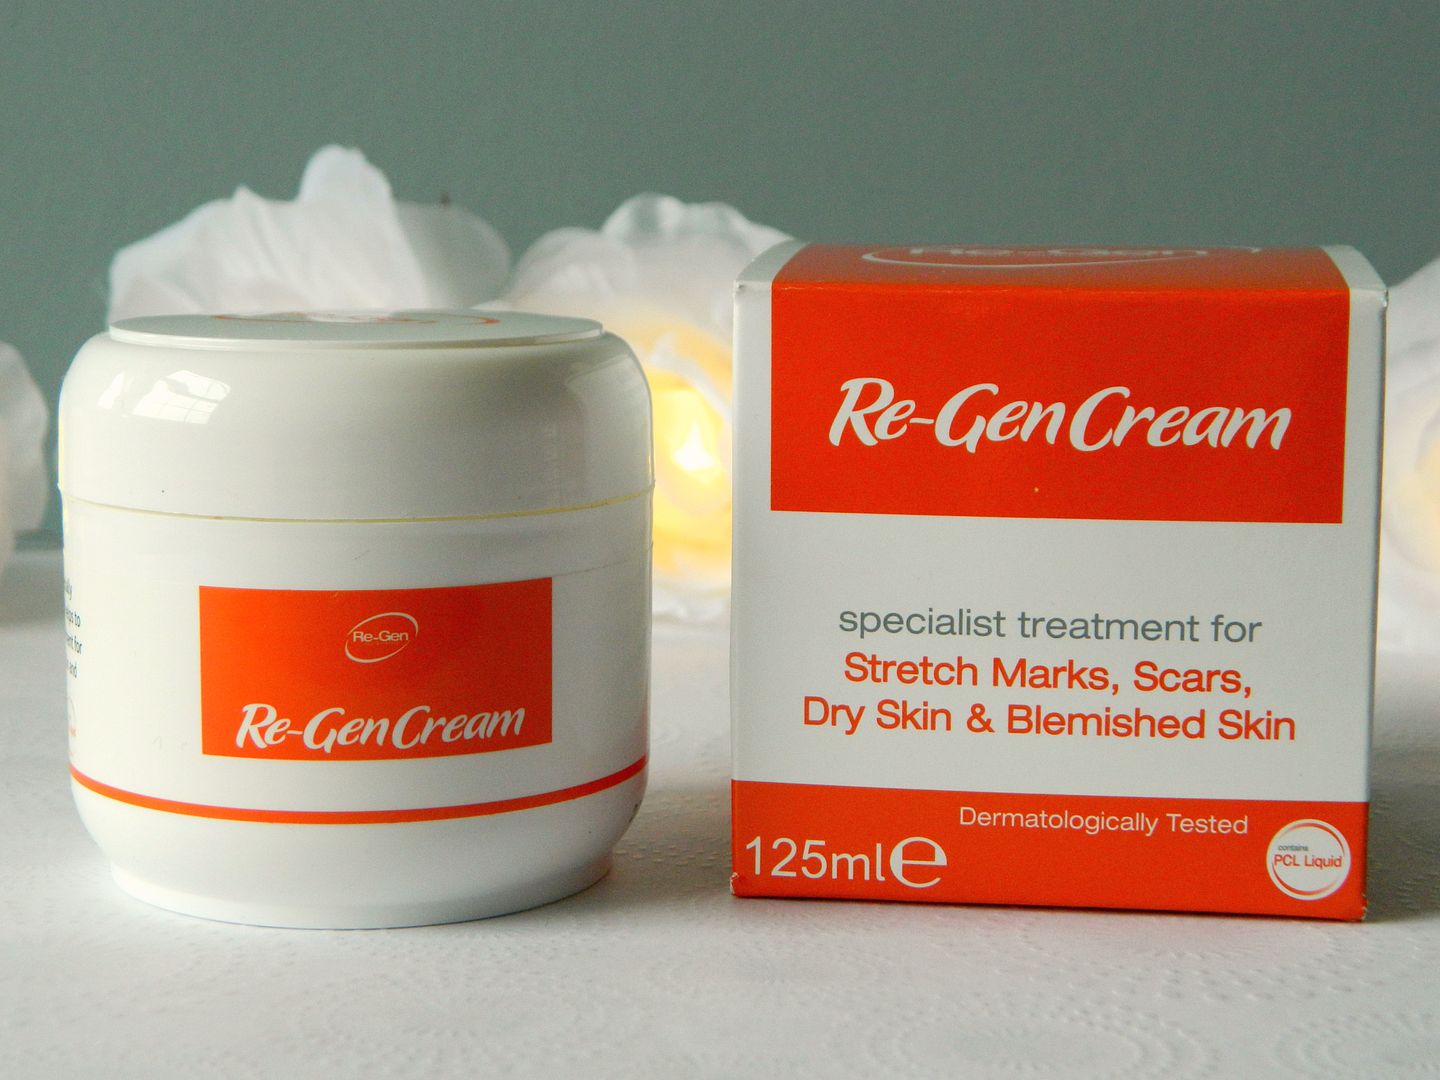 Silkia Re-Gen Cream Pot Packaging Review Belle-amie